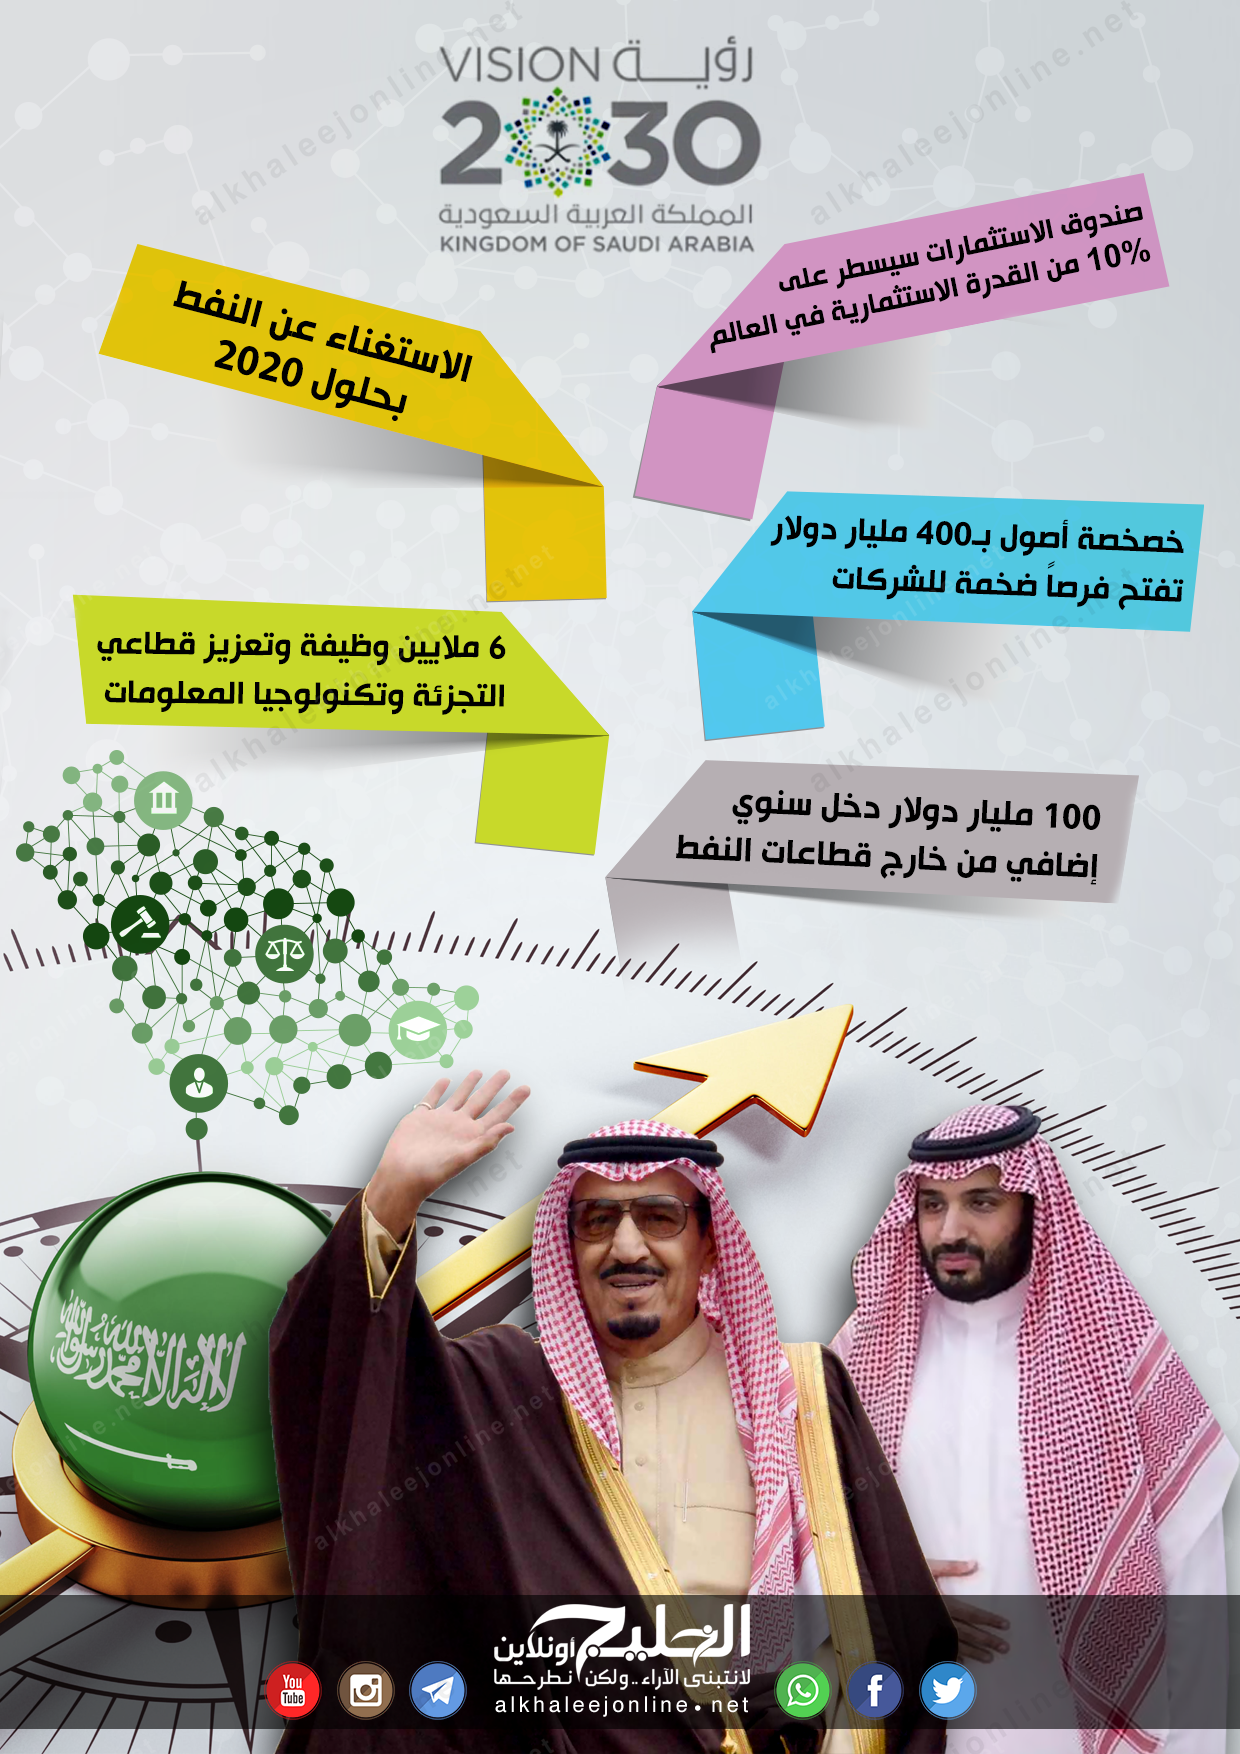 رؤية السعودية 2030 تبتلع إمبراطور إنتاج النفط بالعالم الخليج أونلاين